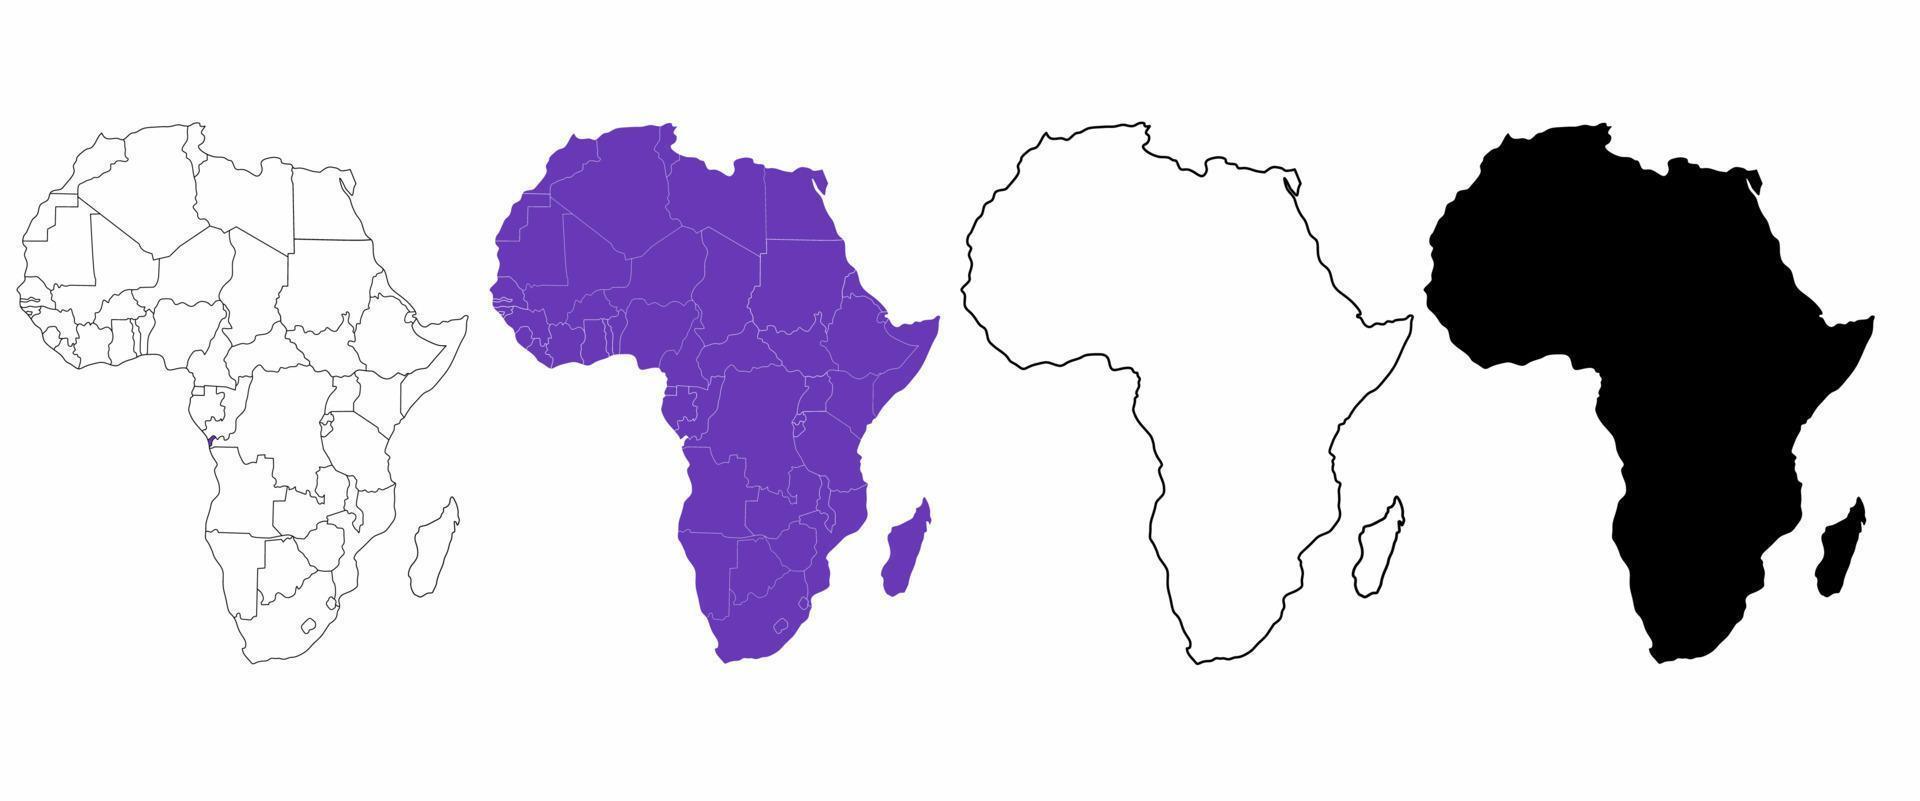 Afrika continent kaart set geïsoleerd op een witte achtergrond vector